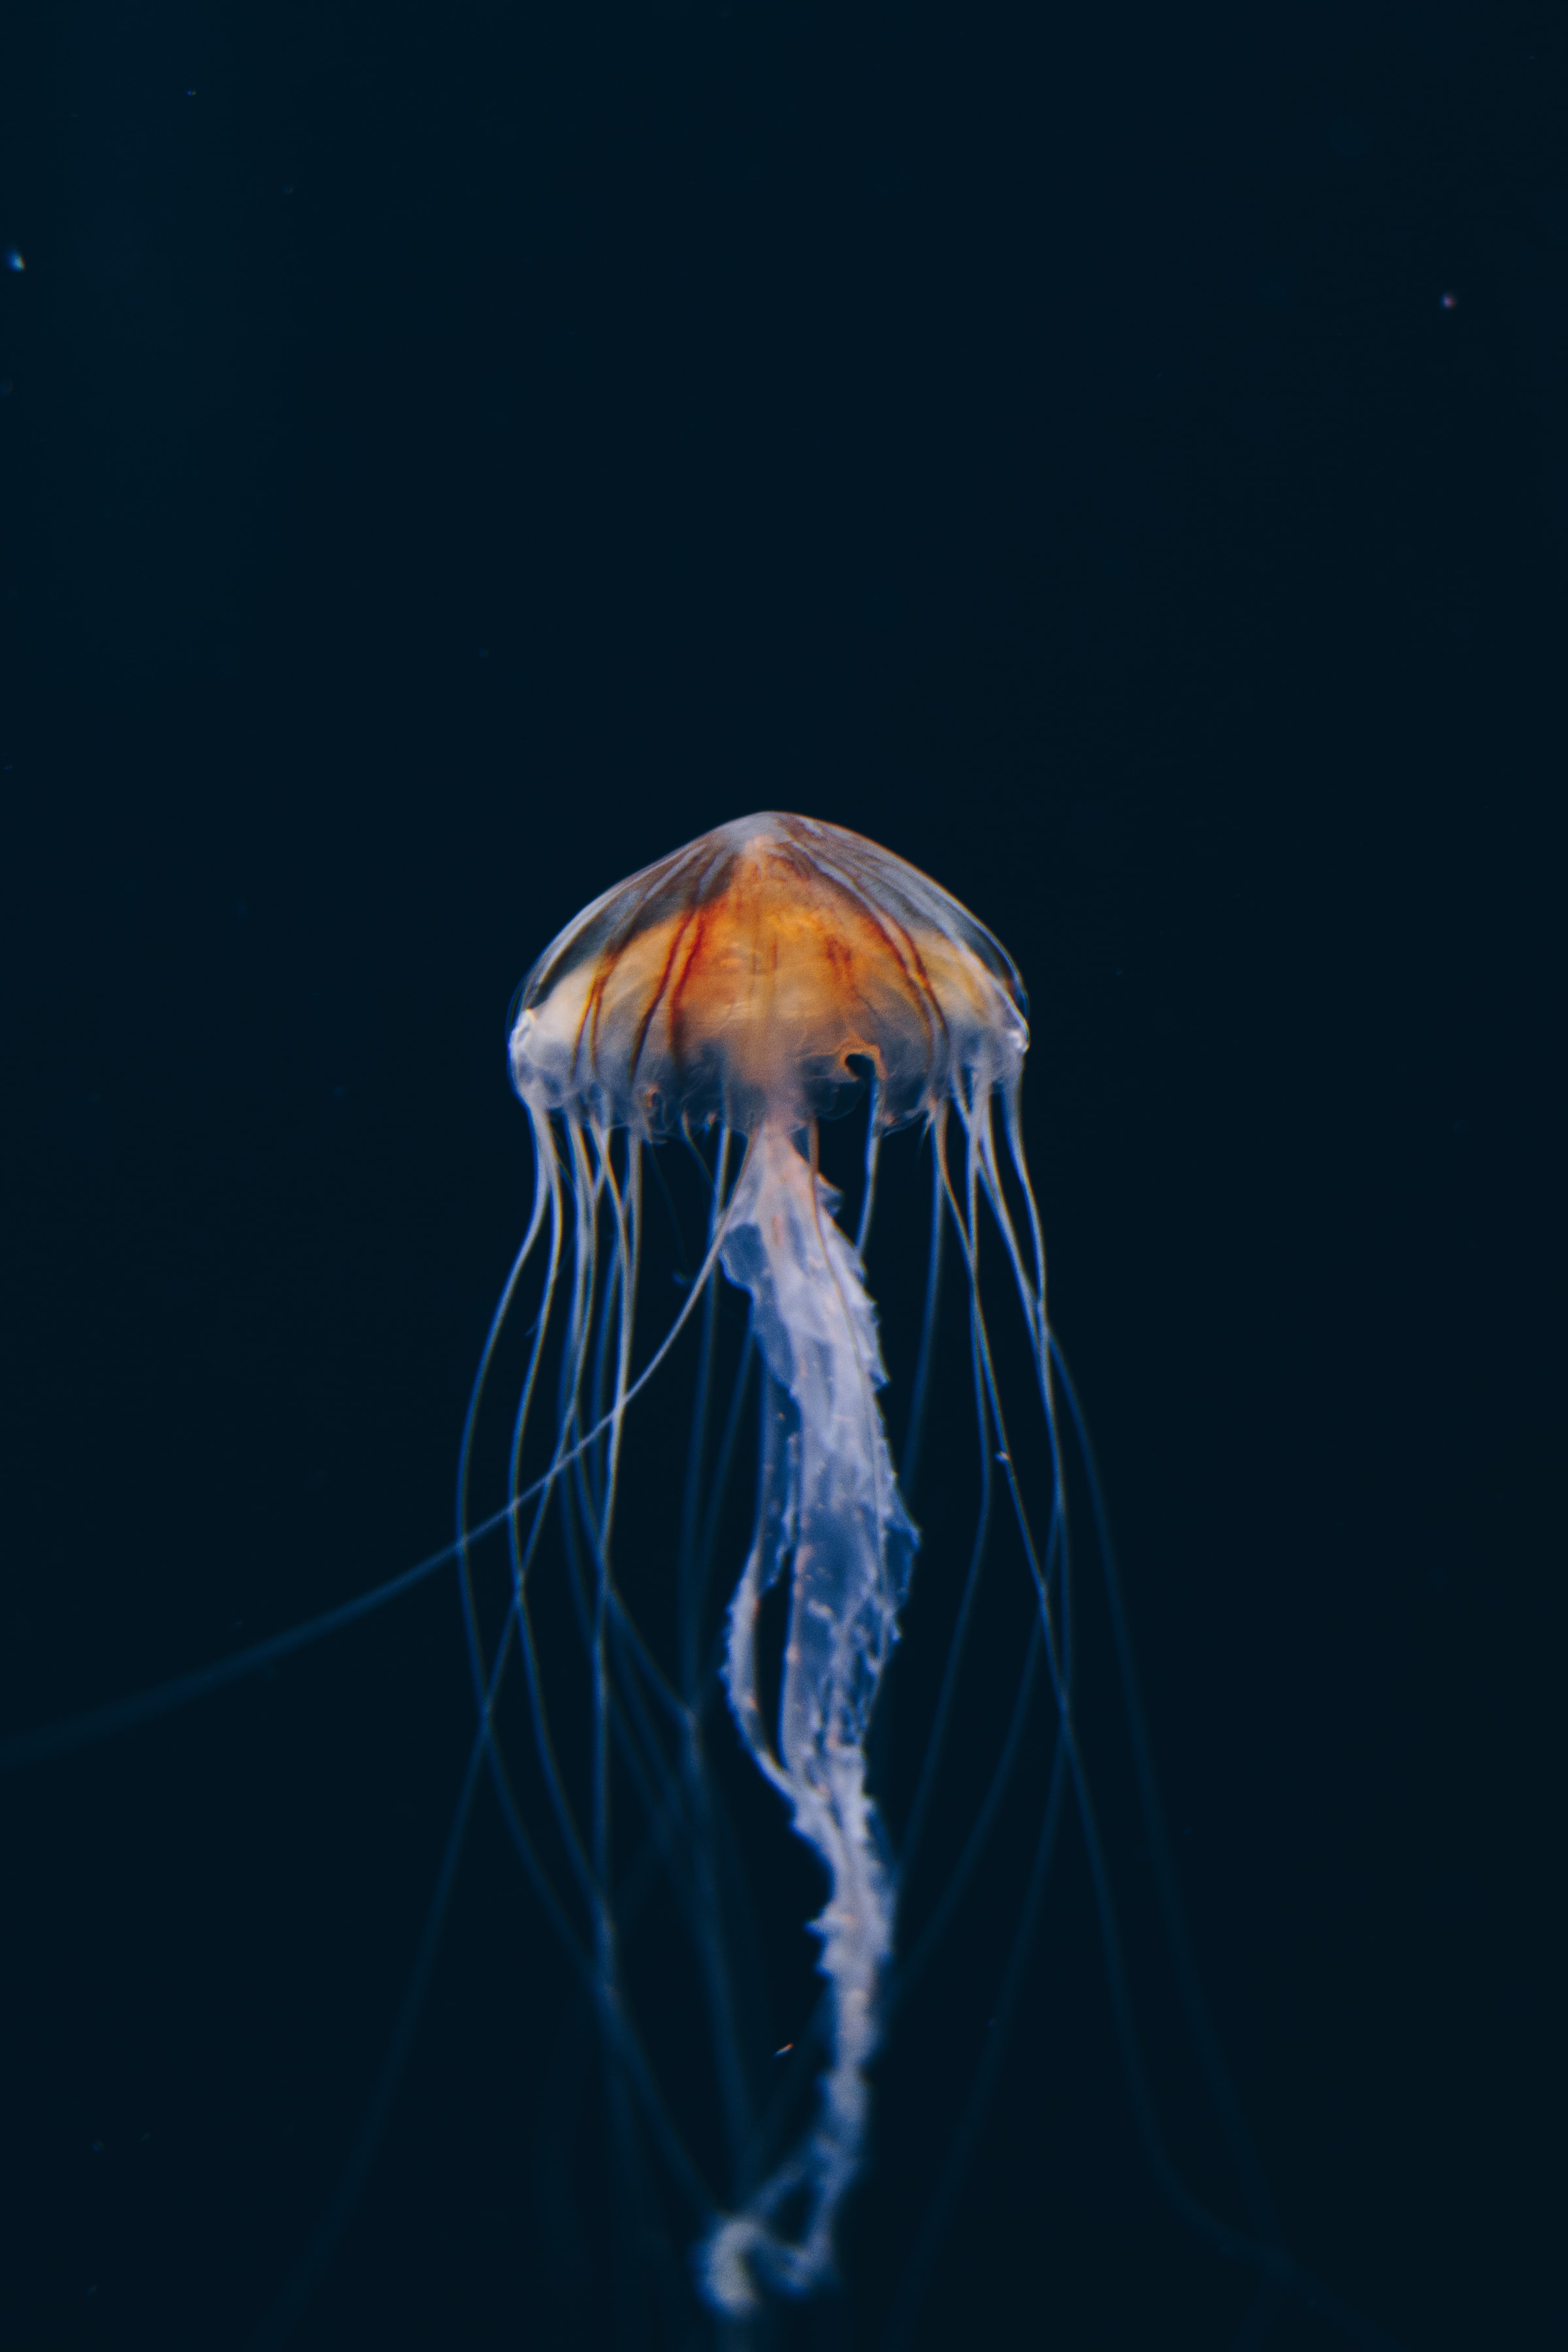 jellyfish, nature, water, dark, beautiful, underwater world Full HD